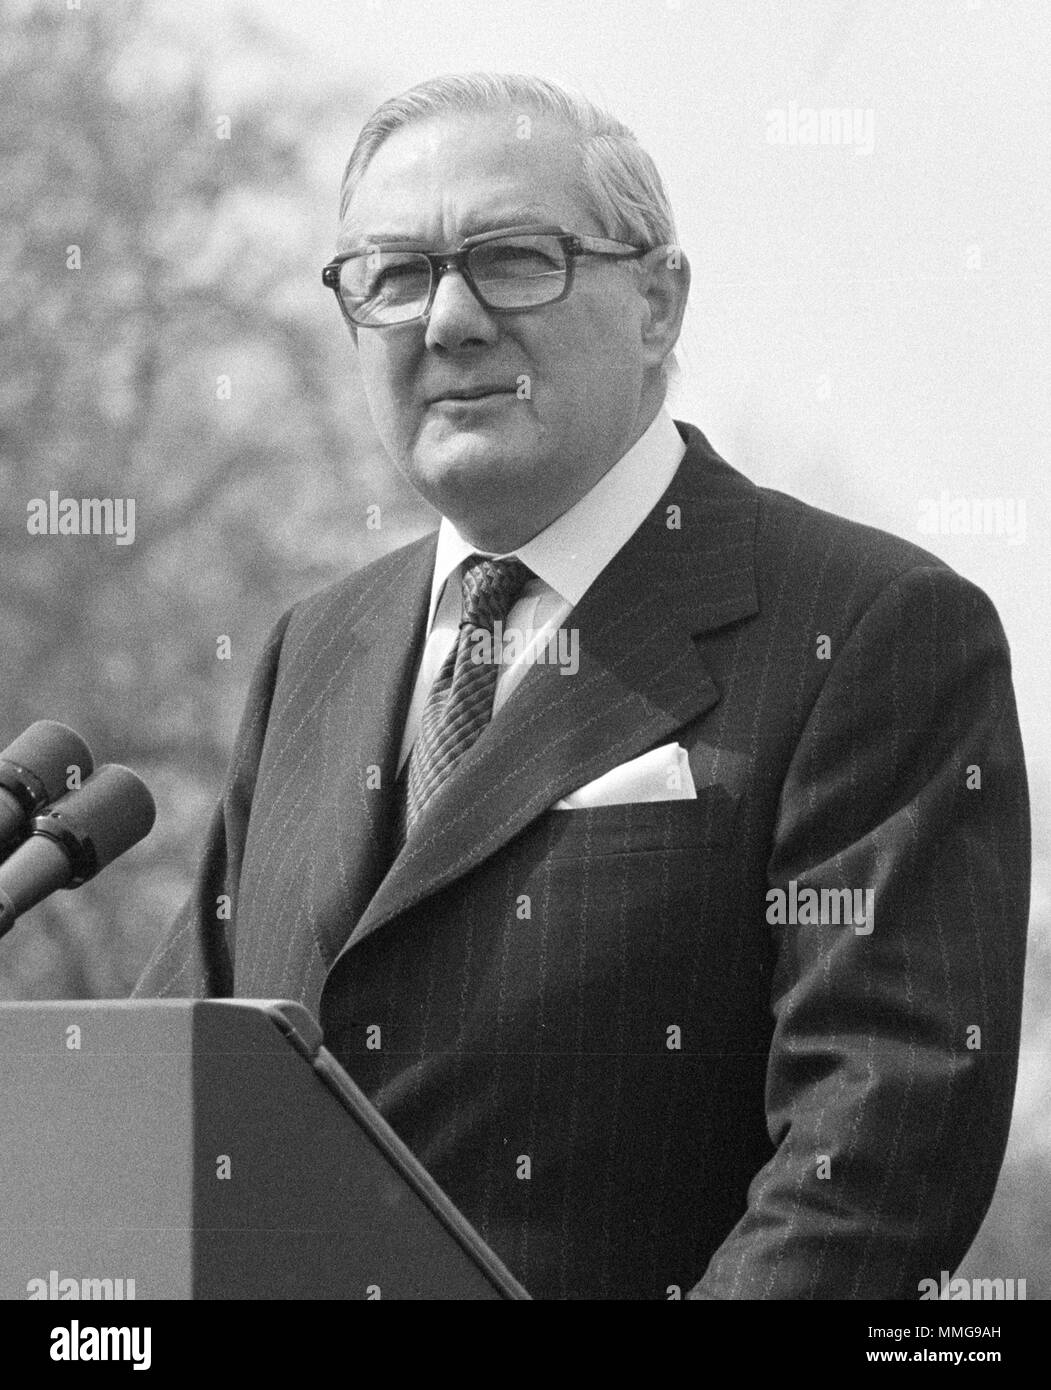 Premierminister James Callaghan, Premierminister des Vereinigten Königreichs, Leonard James Callaghan, (1912-2005), Jim Callaghan, Premierminister des Vereinigten Königreichs von 1976 bis 1979 Stockfoto